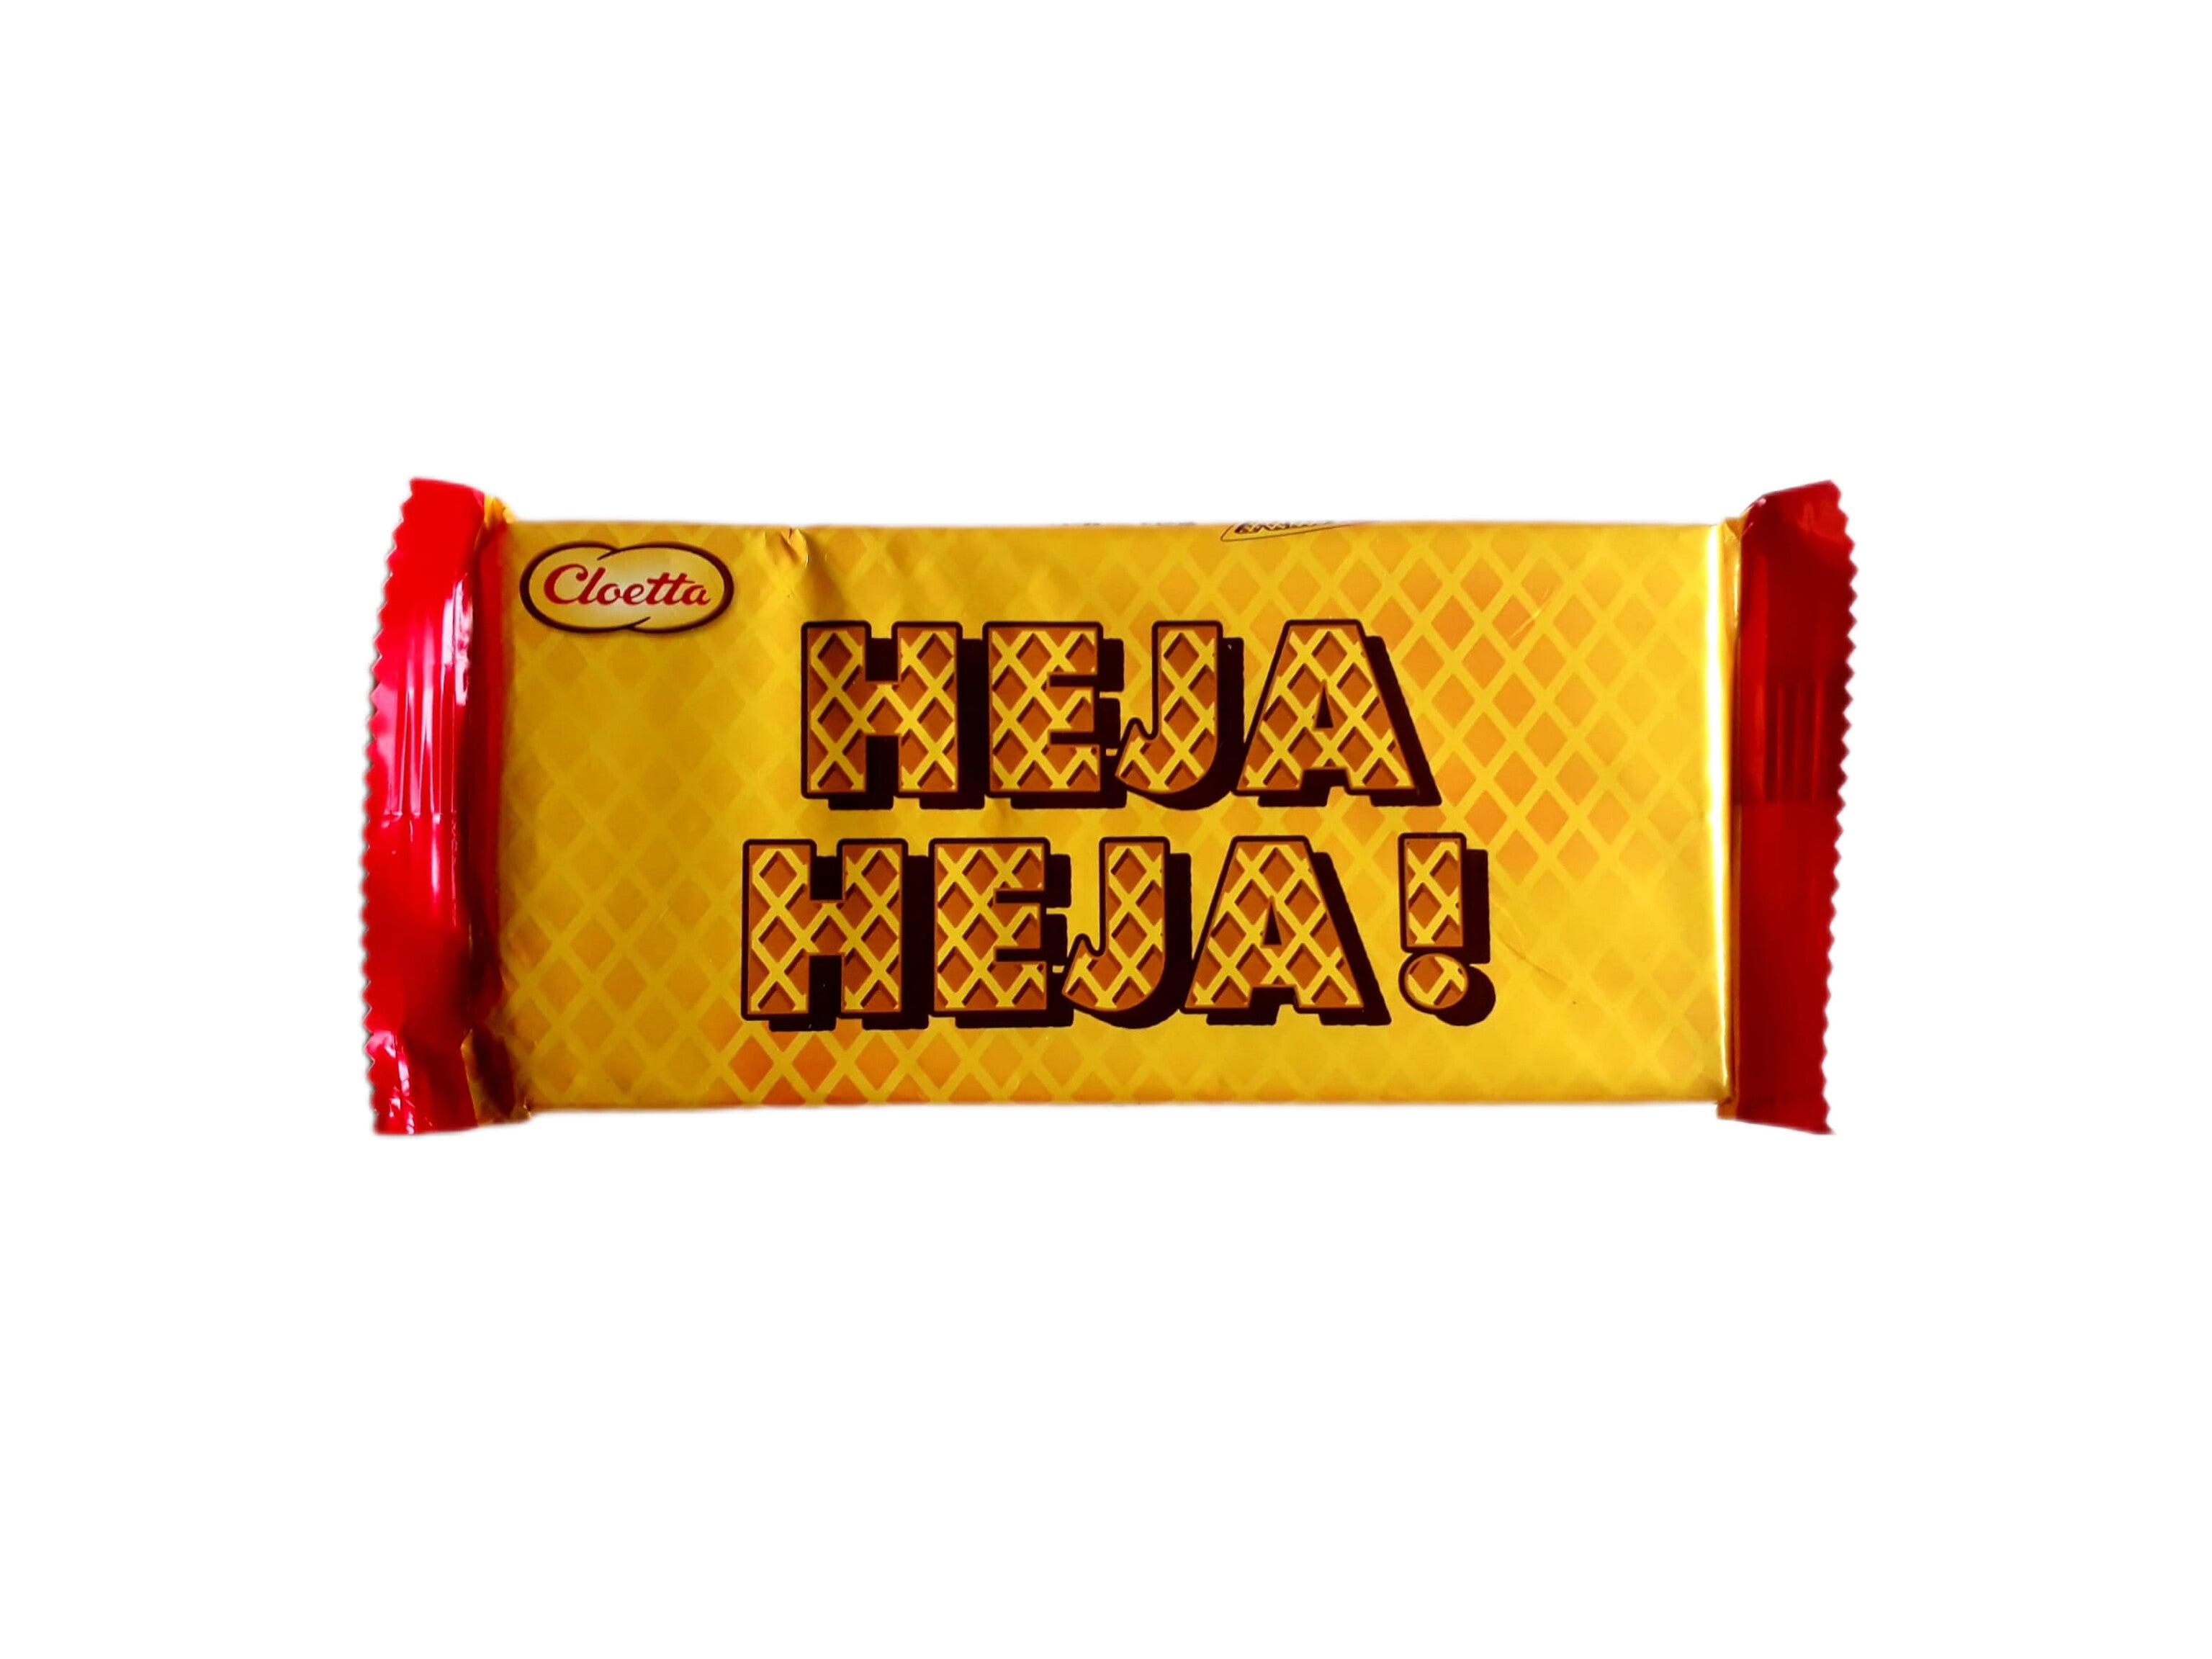 Kex choklad "Heja Heja!" 60g - Cloetta